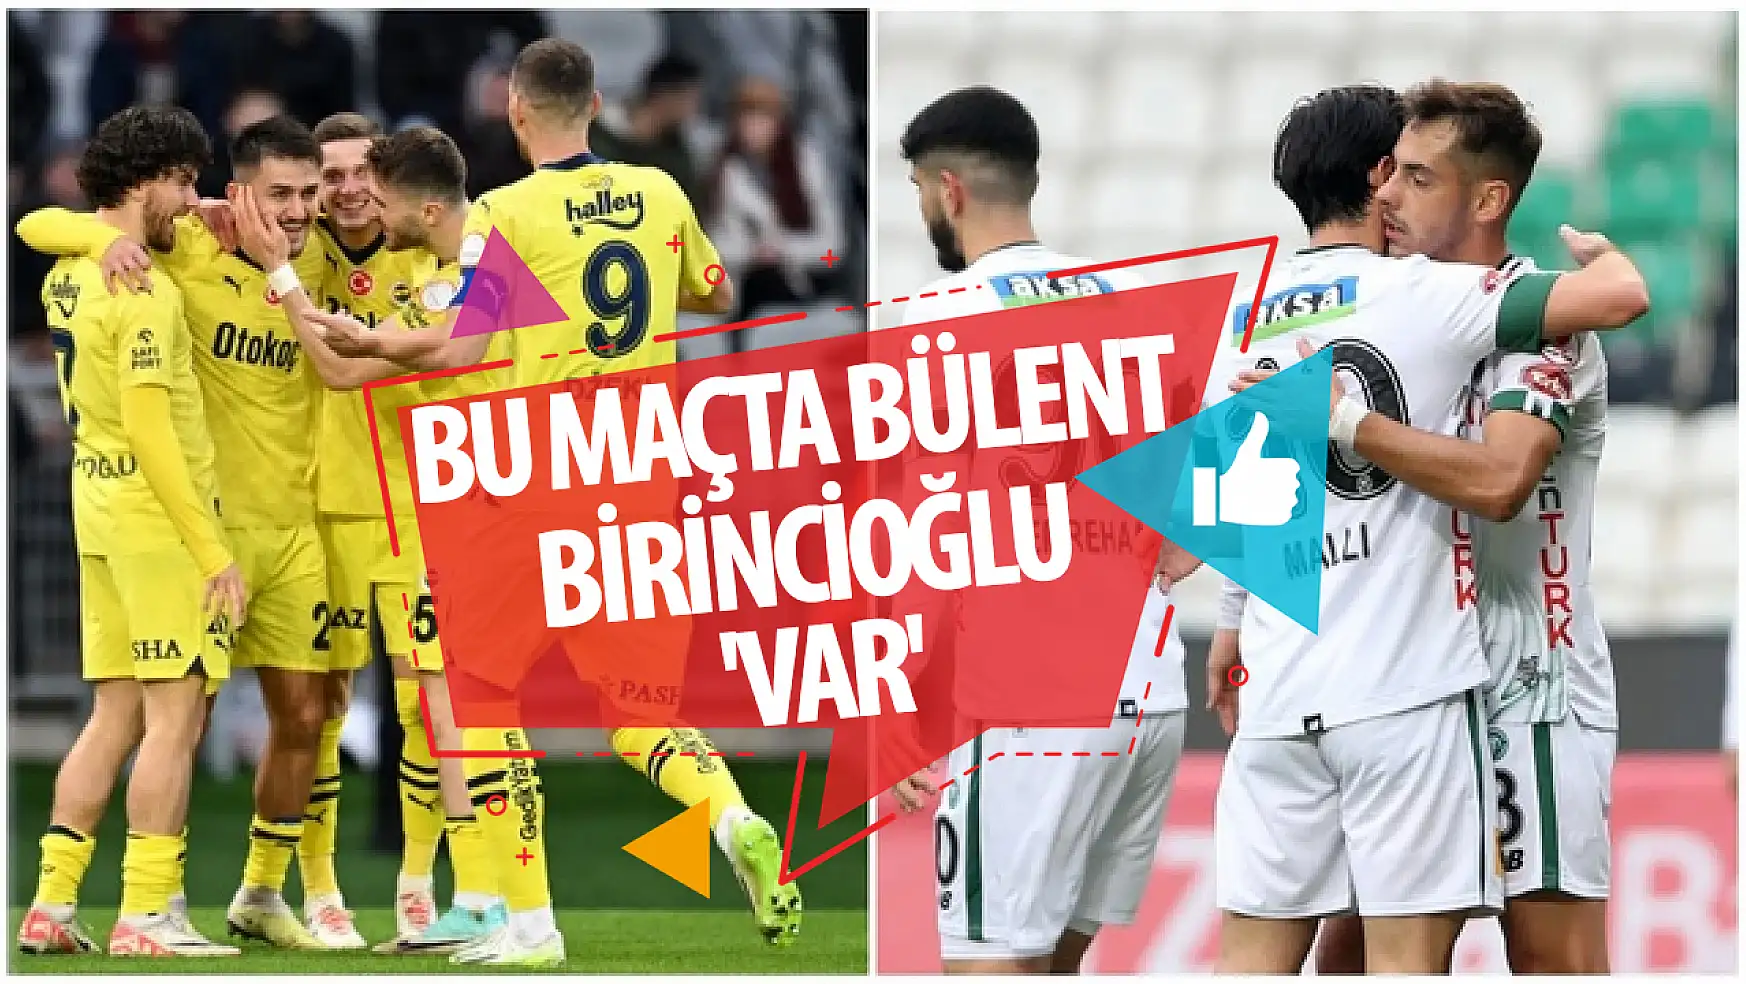 Fenerbahçe- Konyaspor maçında Bülent Birincioğlu 'VAR'!